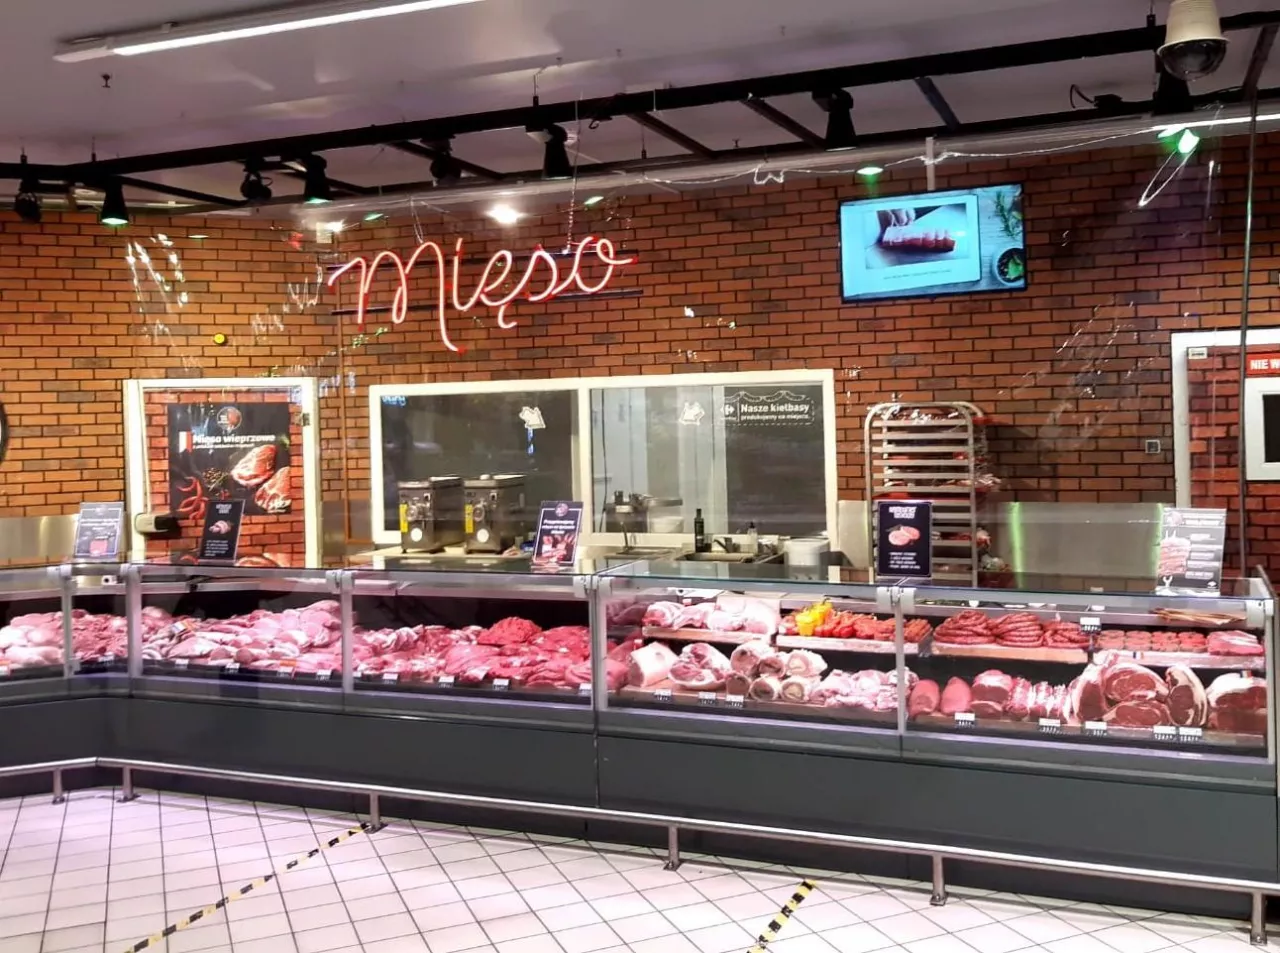 Targ Mięsny w hipermarkecie Carrefour (mat. prasowe)